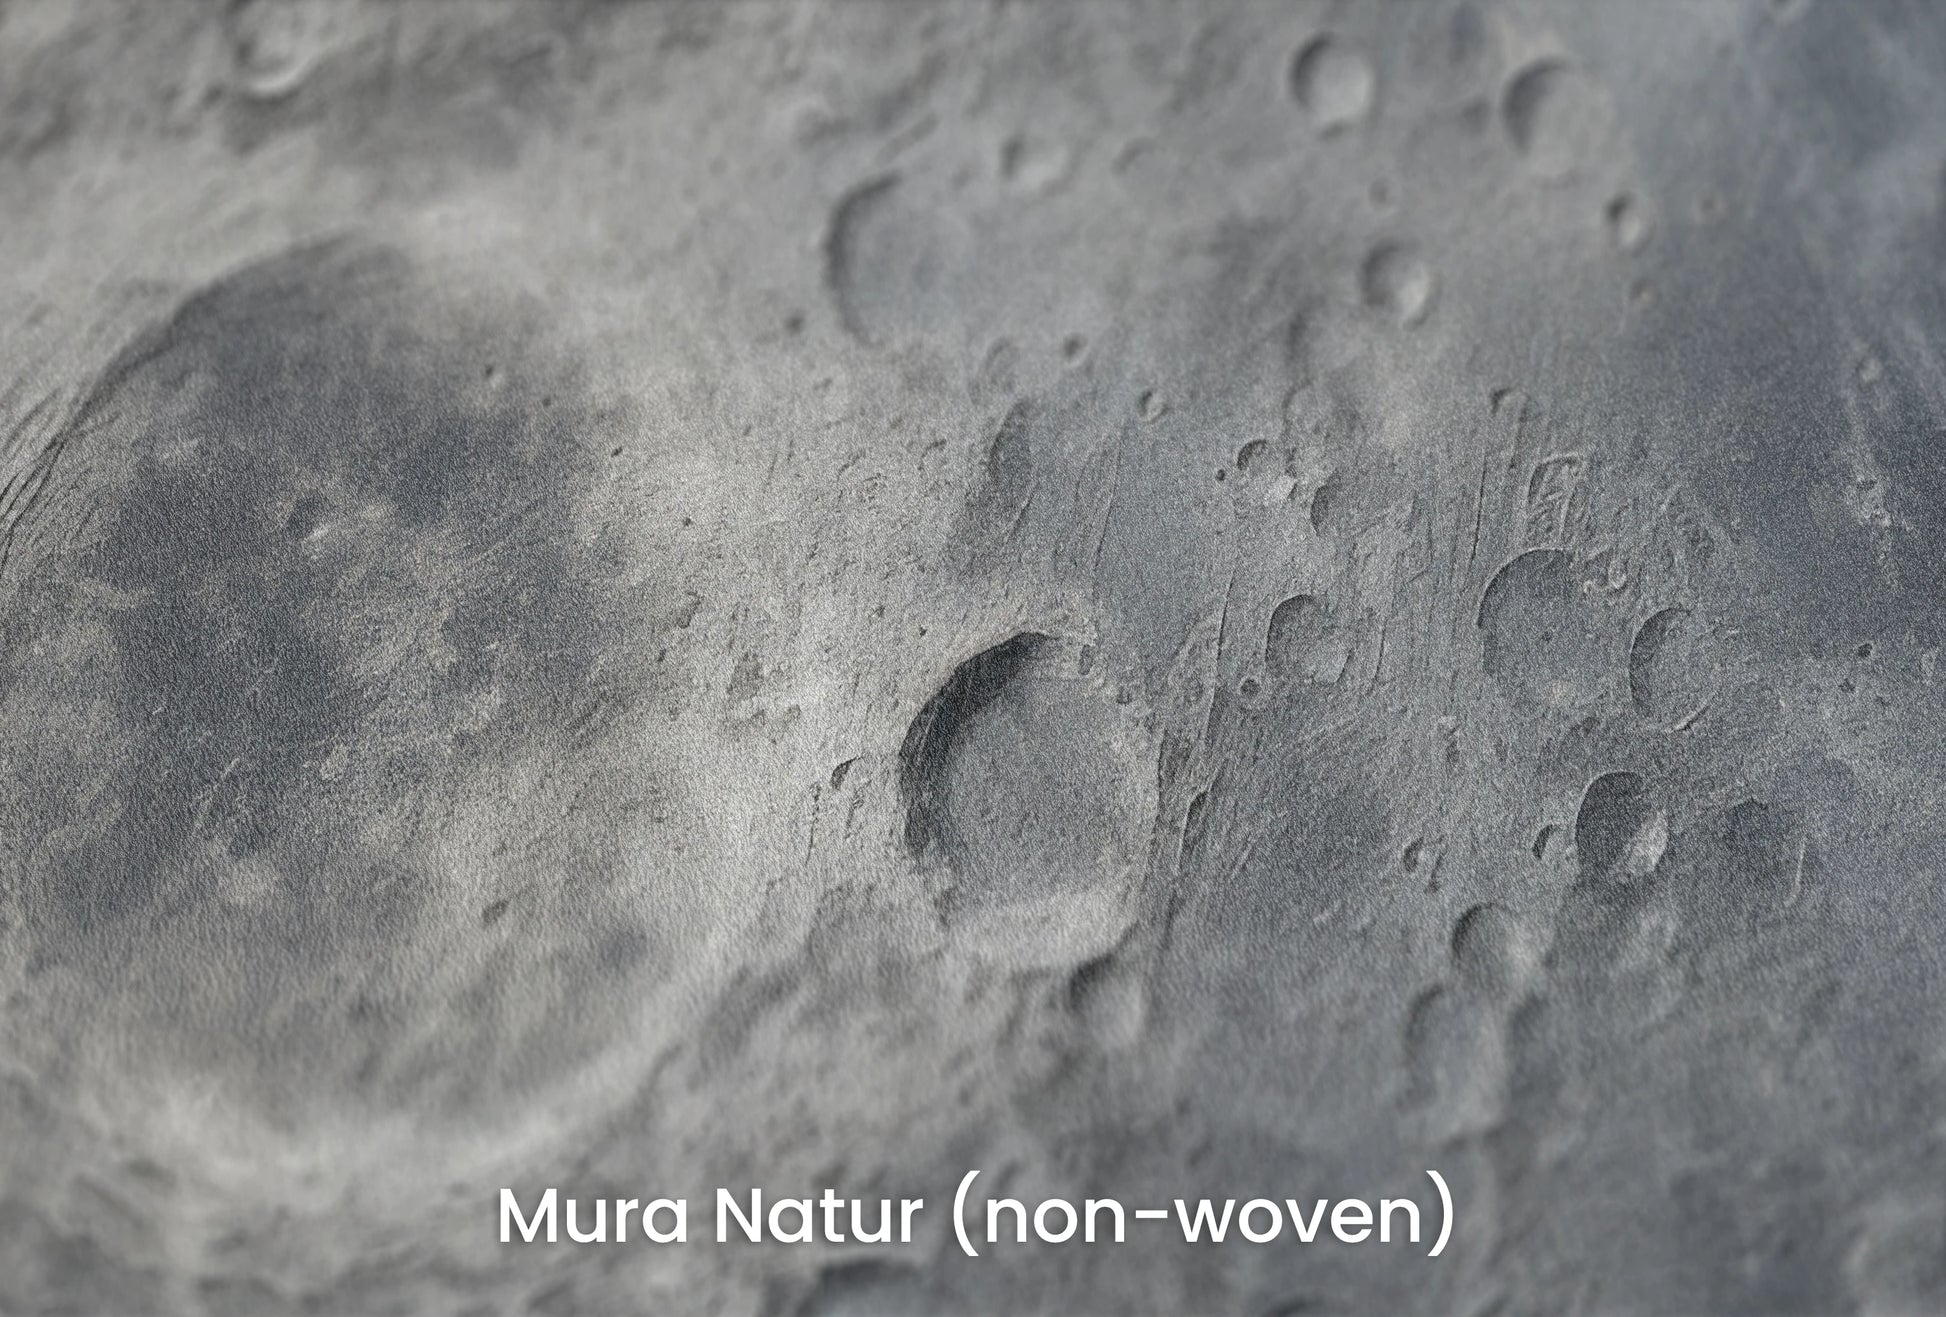 Zbliżenie na artystyczną fototapetę o nazwie Lunar Silence #2 na podłożu Mura Natur (non-woven) - naturalne i ekologiczne podłoże.